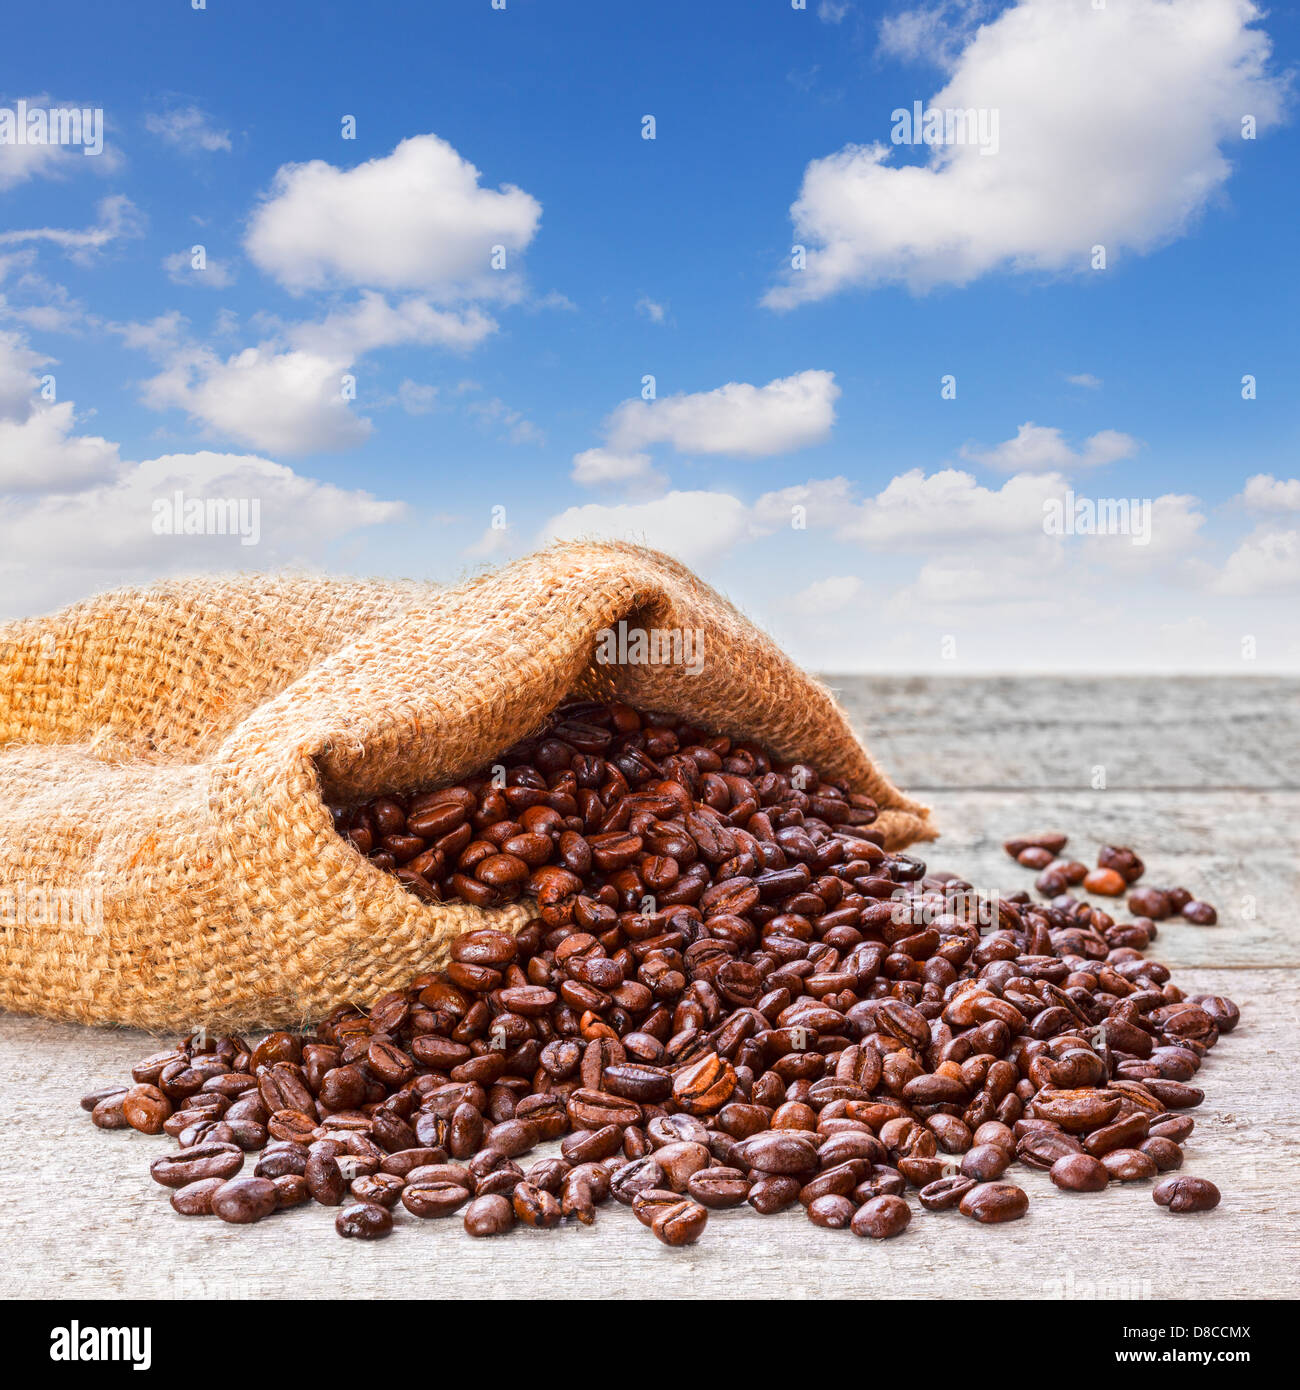 Los granos de café saliendo de saco y Blue Sky - granos de café tostado fresco saliendo de un saco de yute o arpillera... Foto de stock